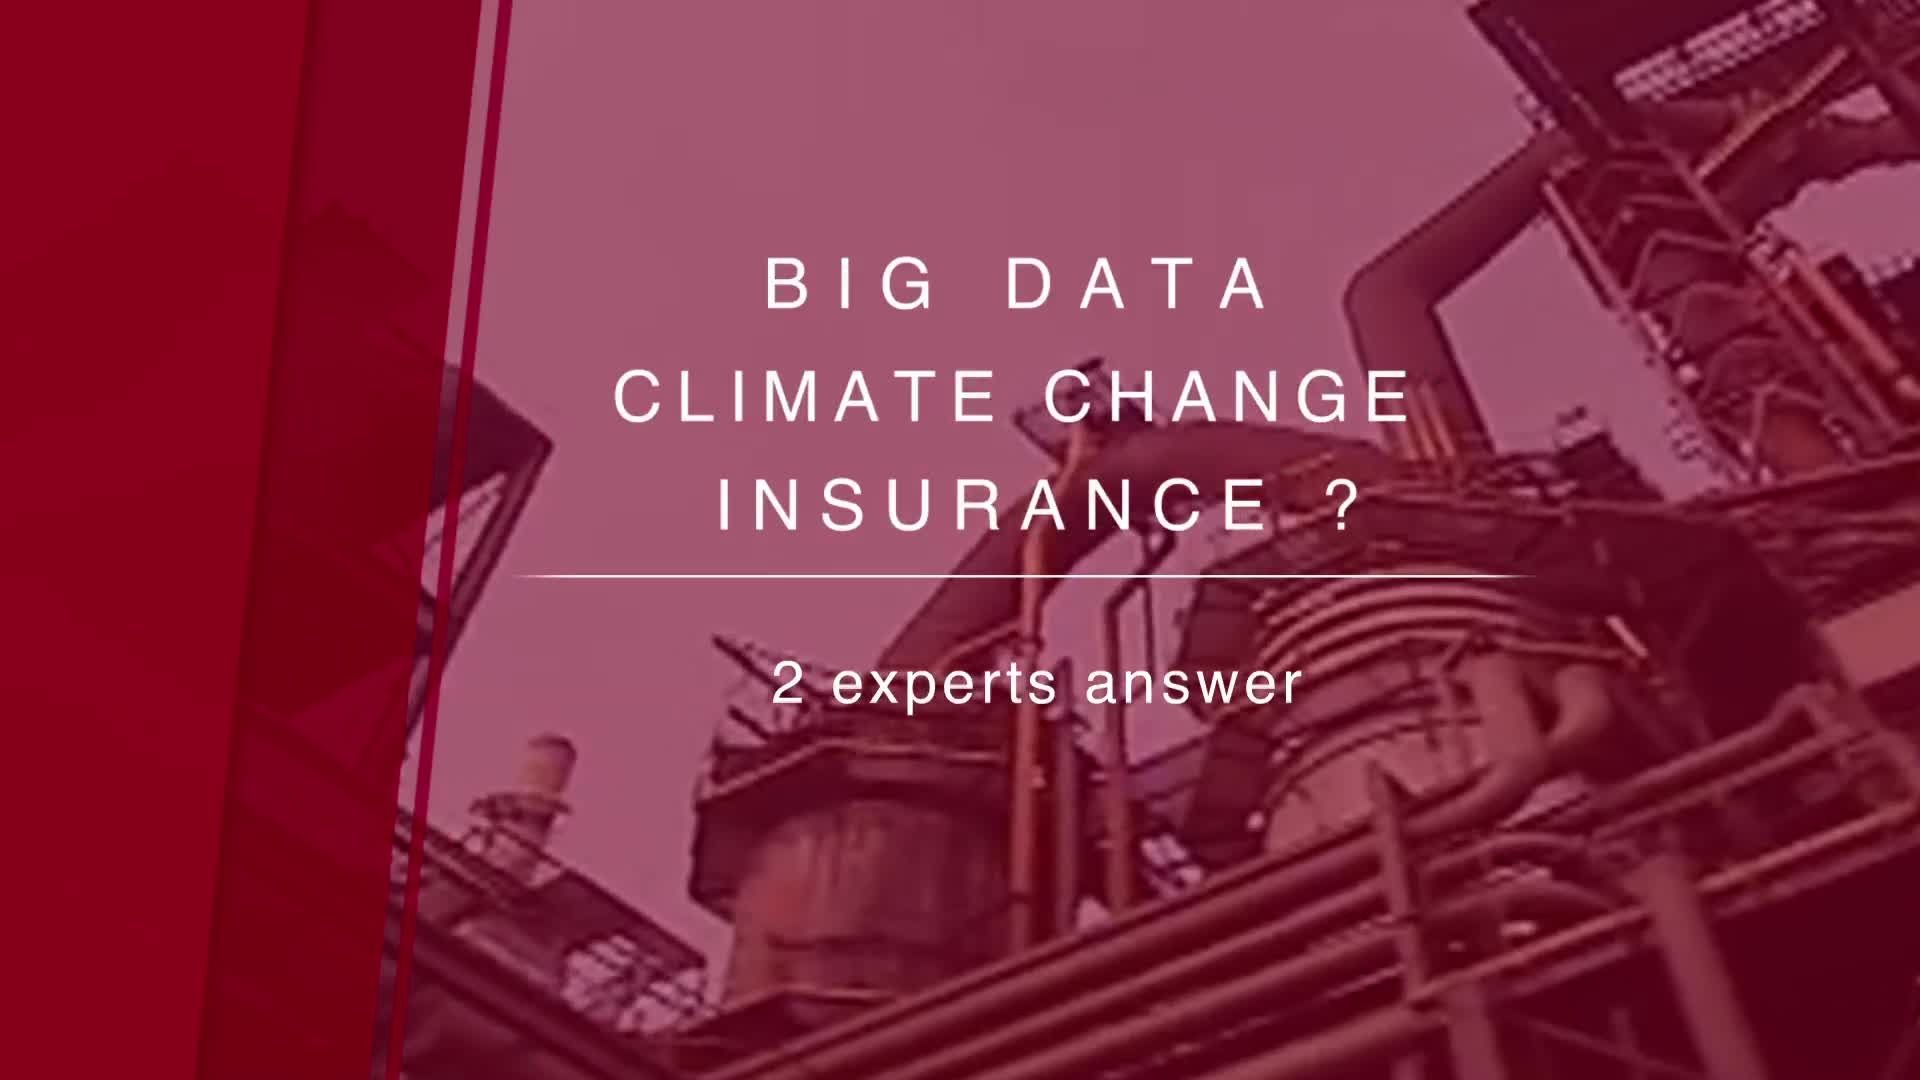 Big data, cambiamento climatico e assicurazioni - Big data, climate change and insurance